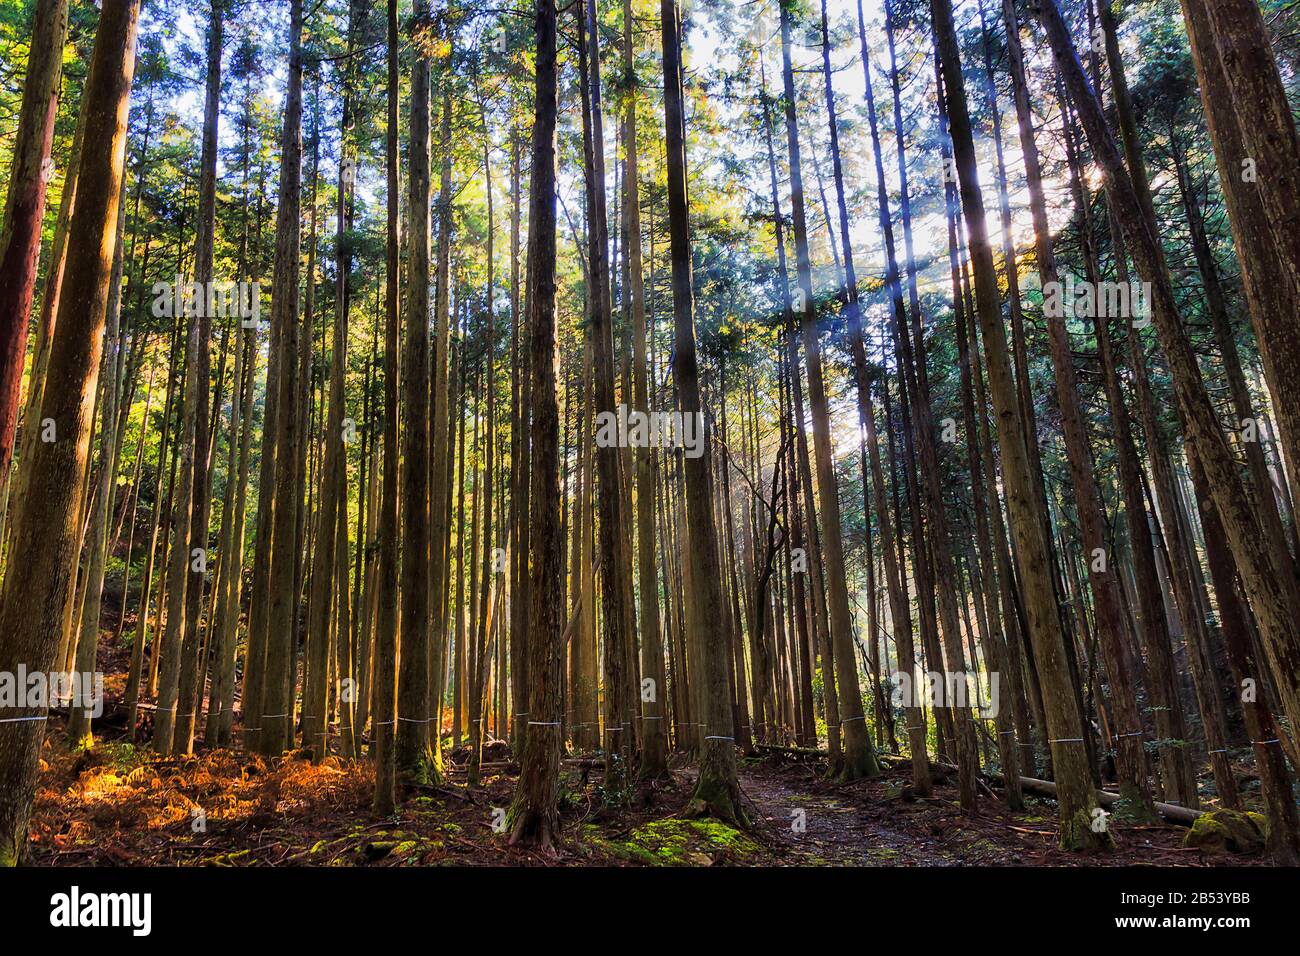 Forêt profonde dans la région d'Ohara autour de Kyoto, au Japon, par une journée ensoleillée avec des rayons de soleil pénétrant dans les pins. Banque D'Images